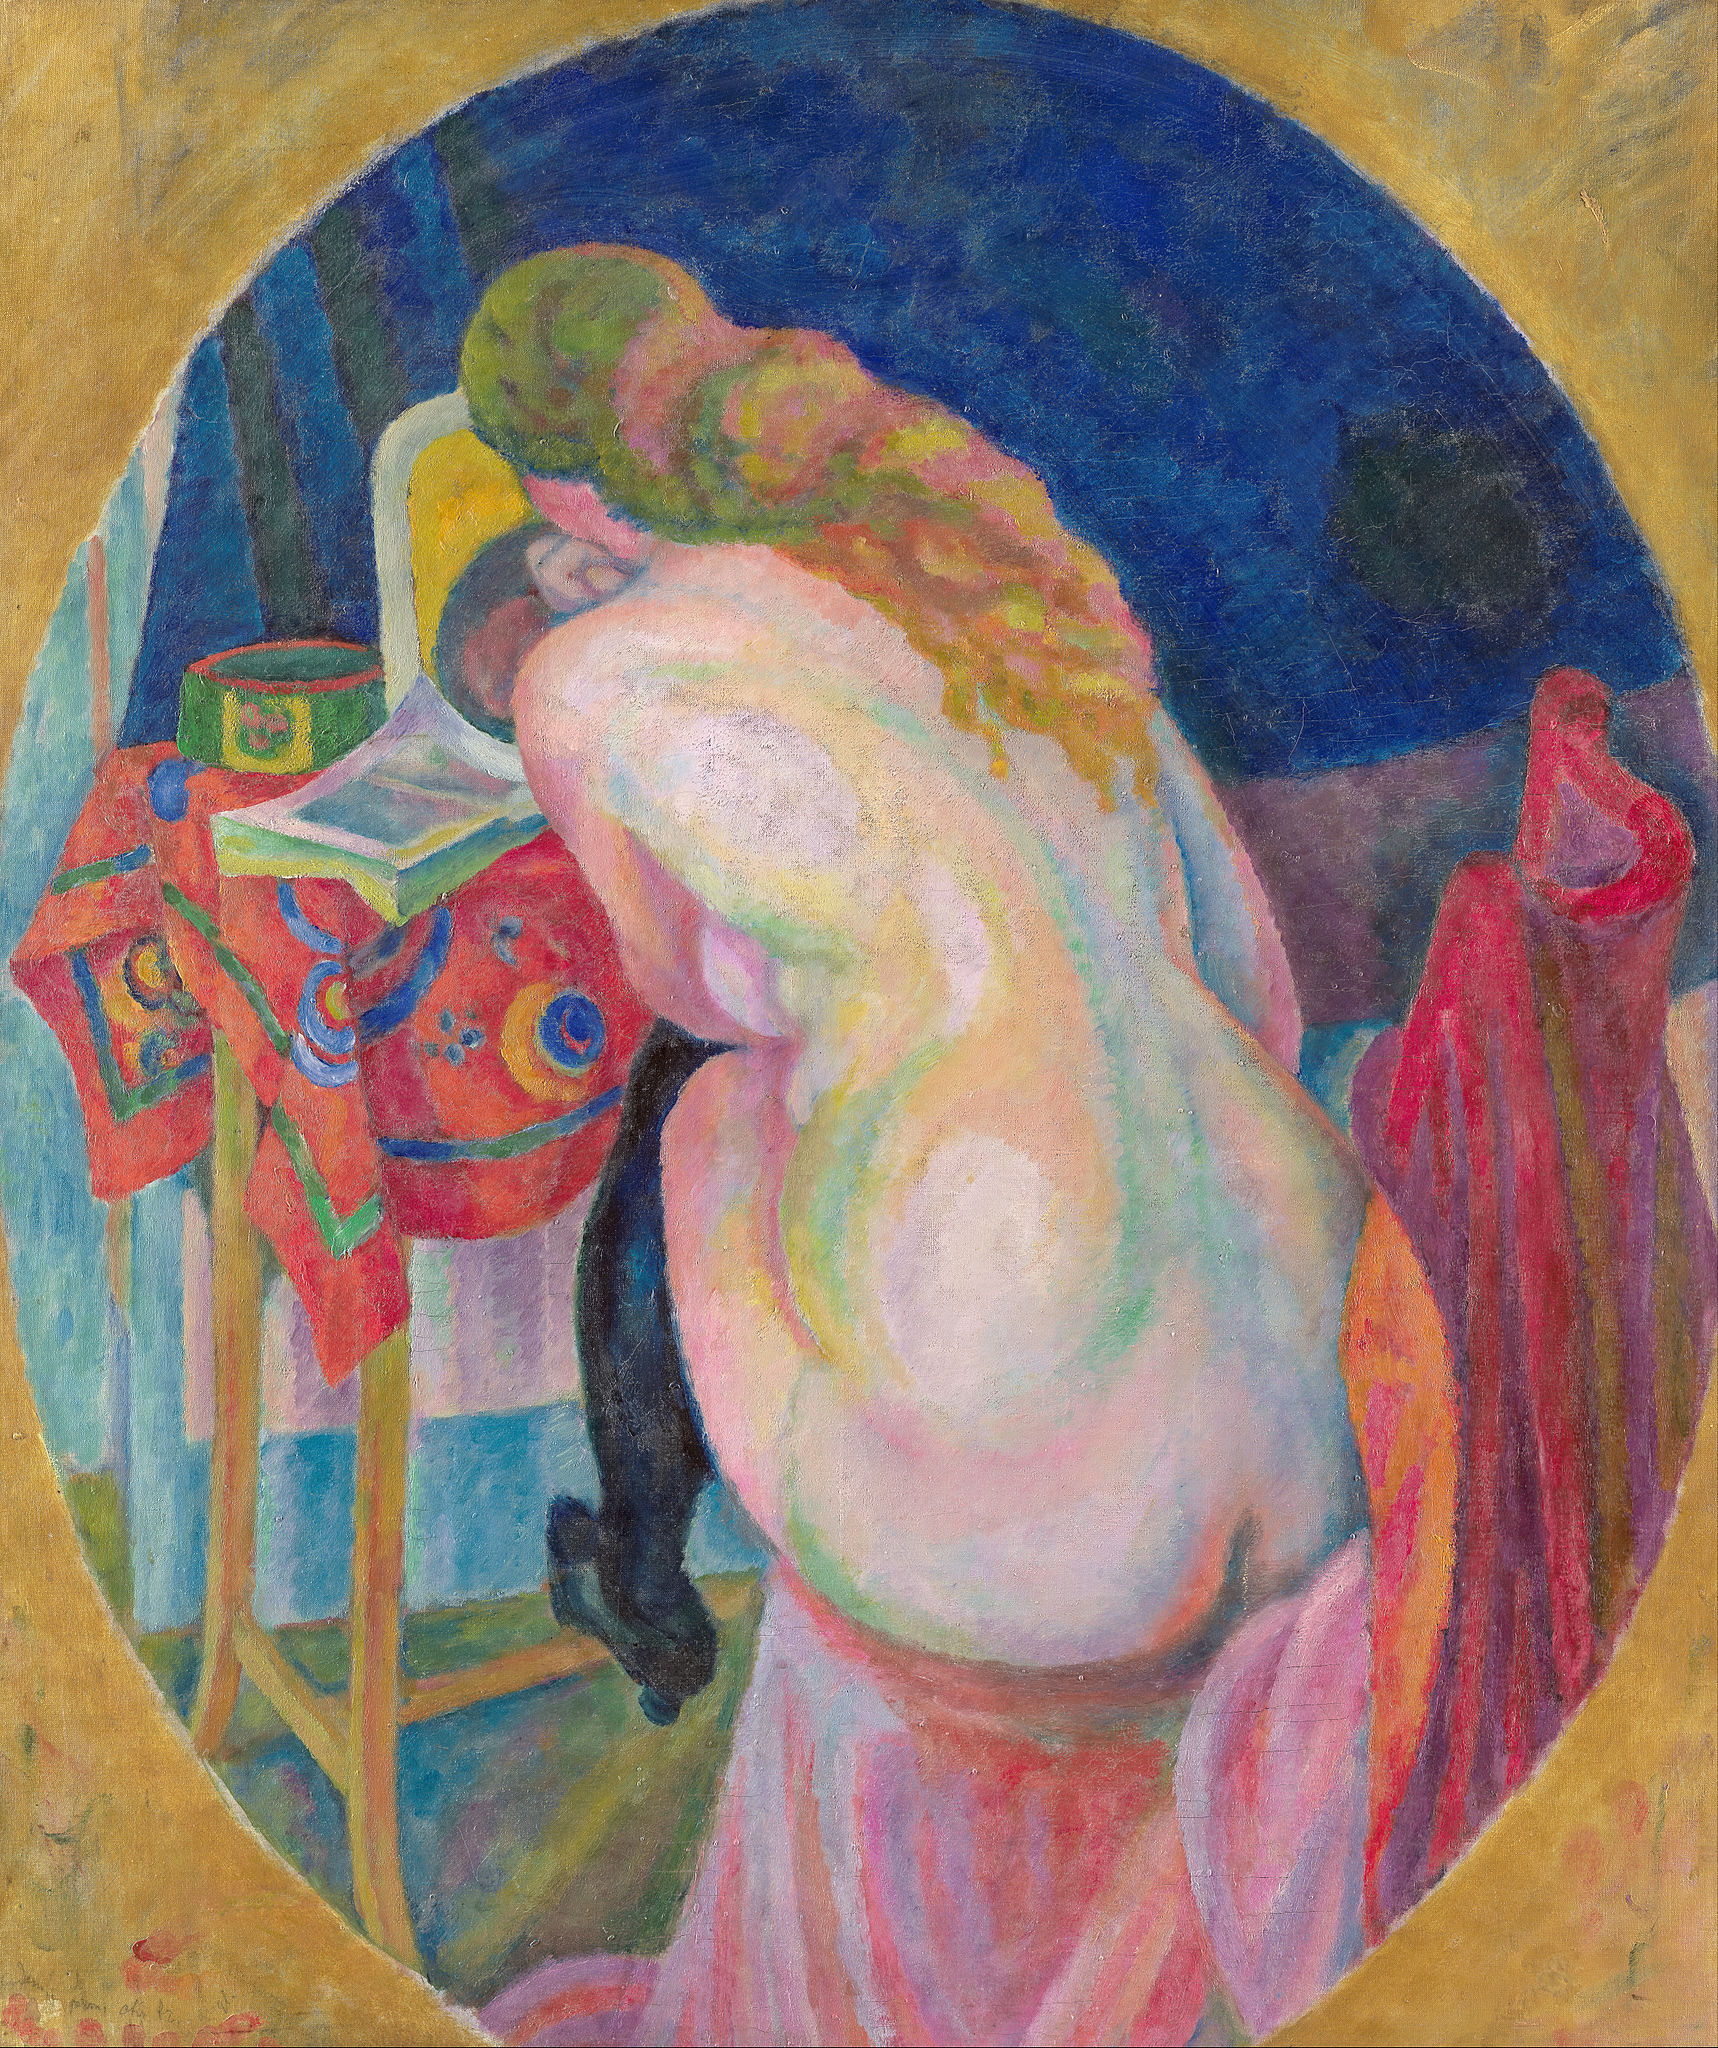 Оголена жінка, що читає by Robert Delaunay - 1915 - 86.2 x 72.4 см 